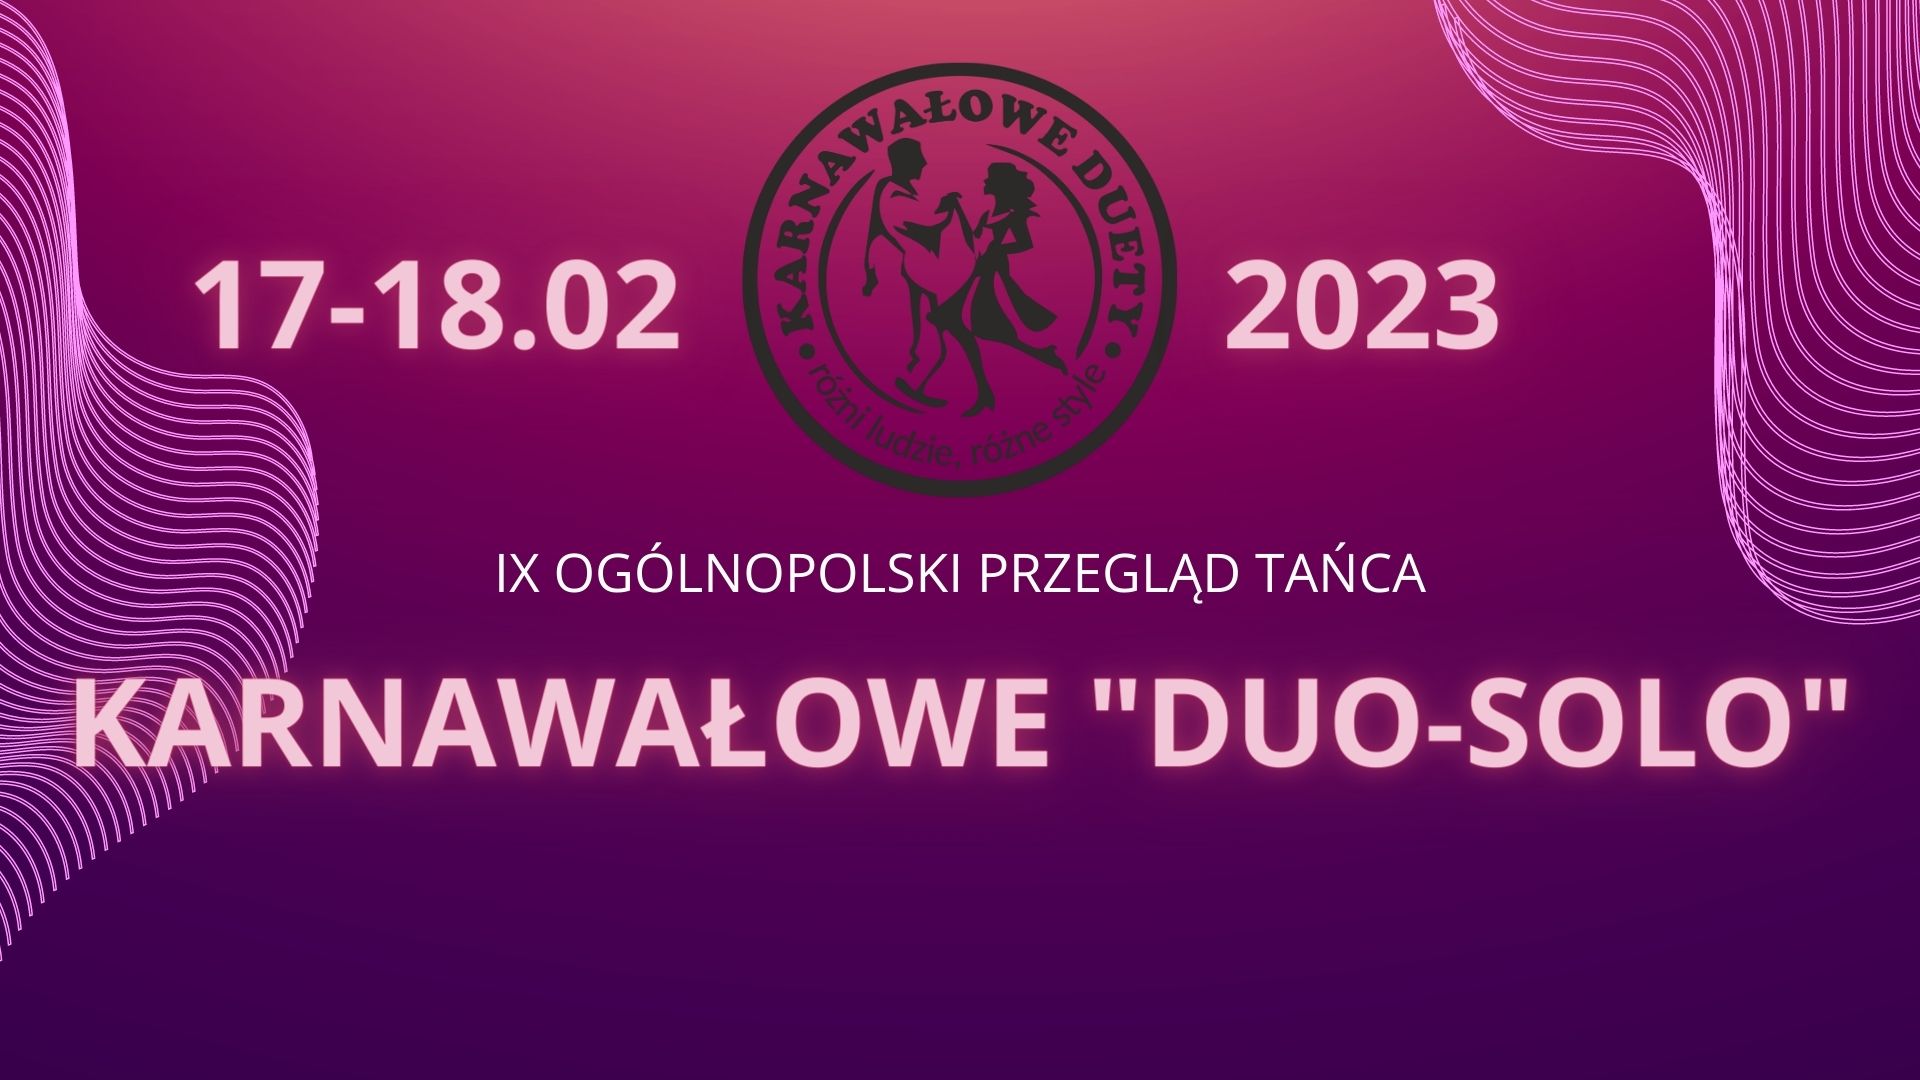  9. Ogólnopolski Przegląd Taneczny Karnawałowe Duo-Solo Na zdjęciu plakat imprezy